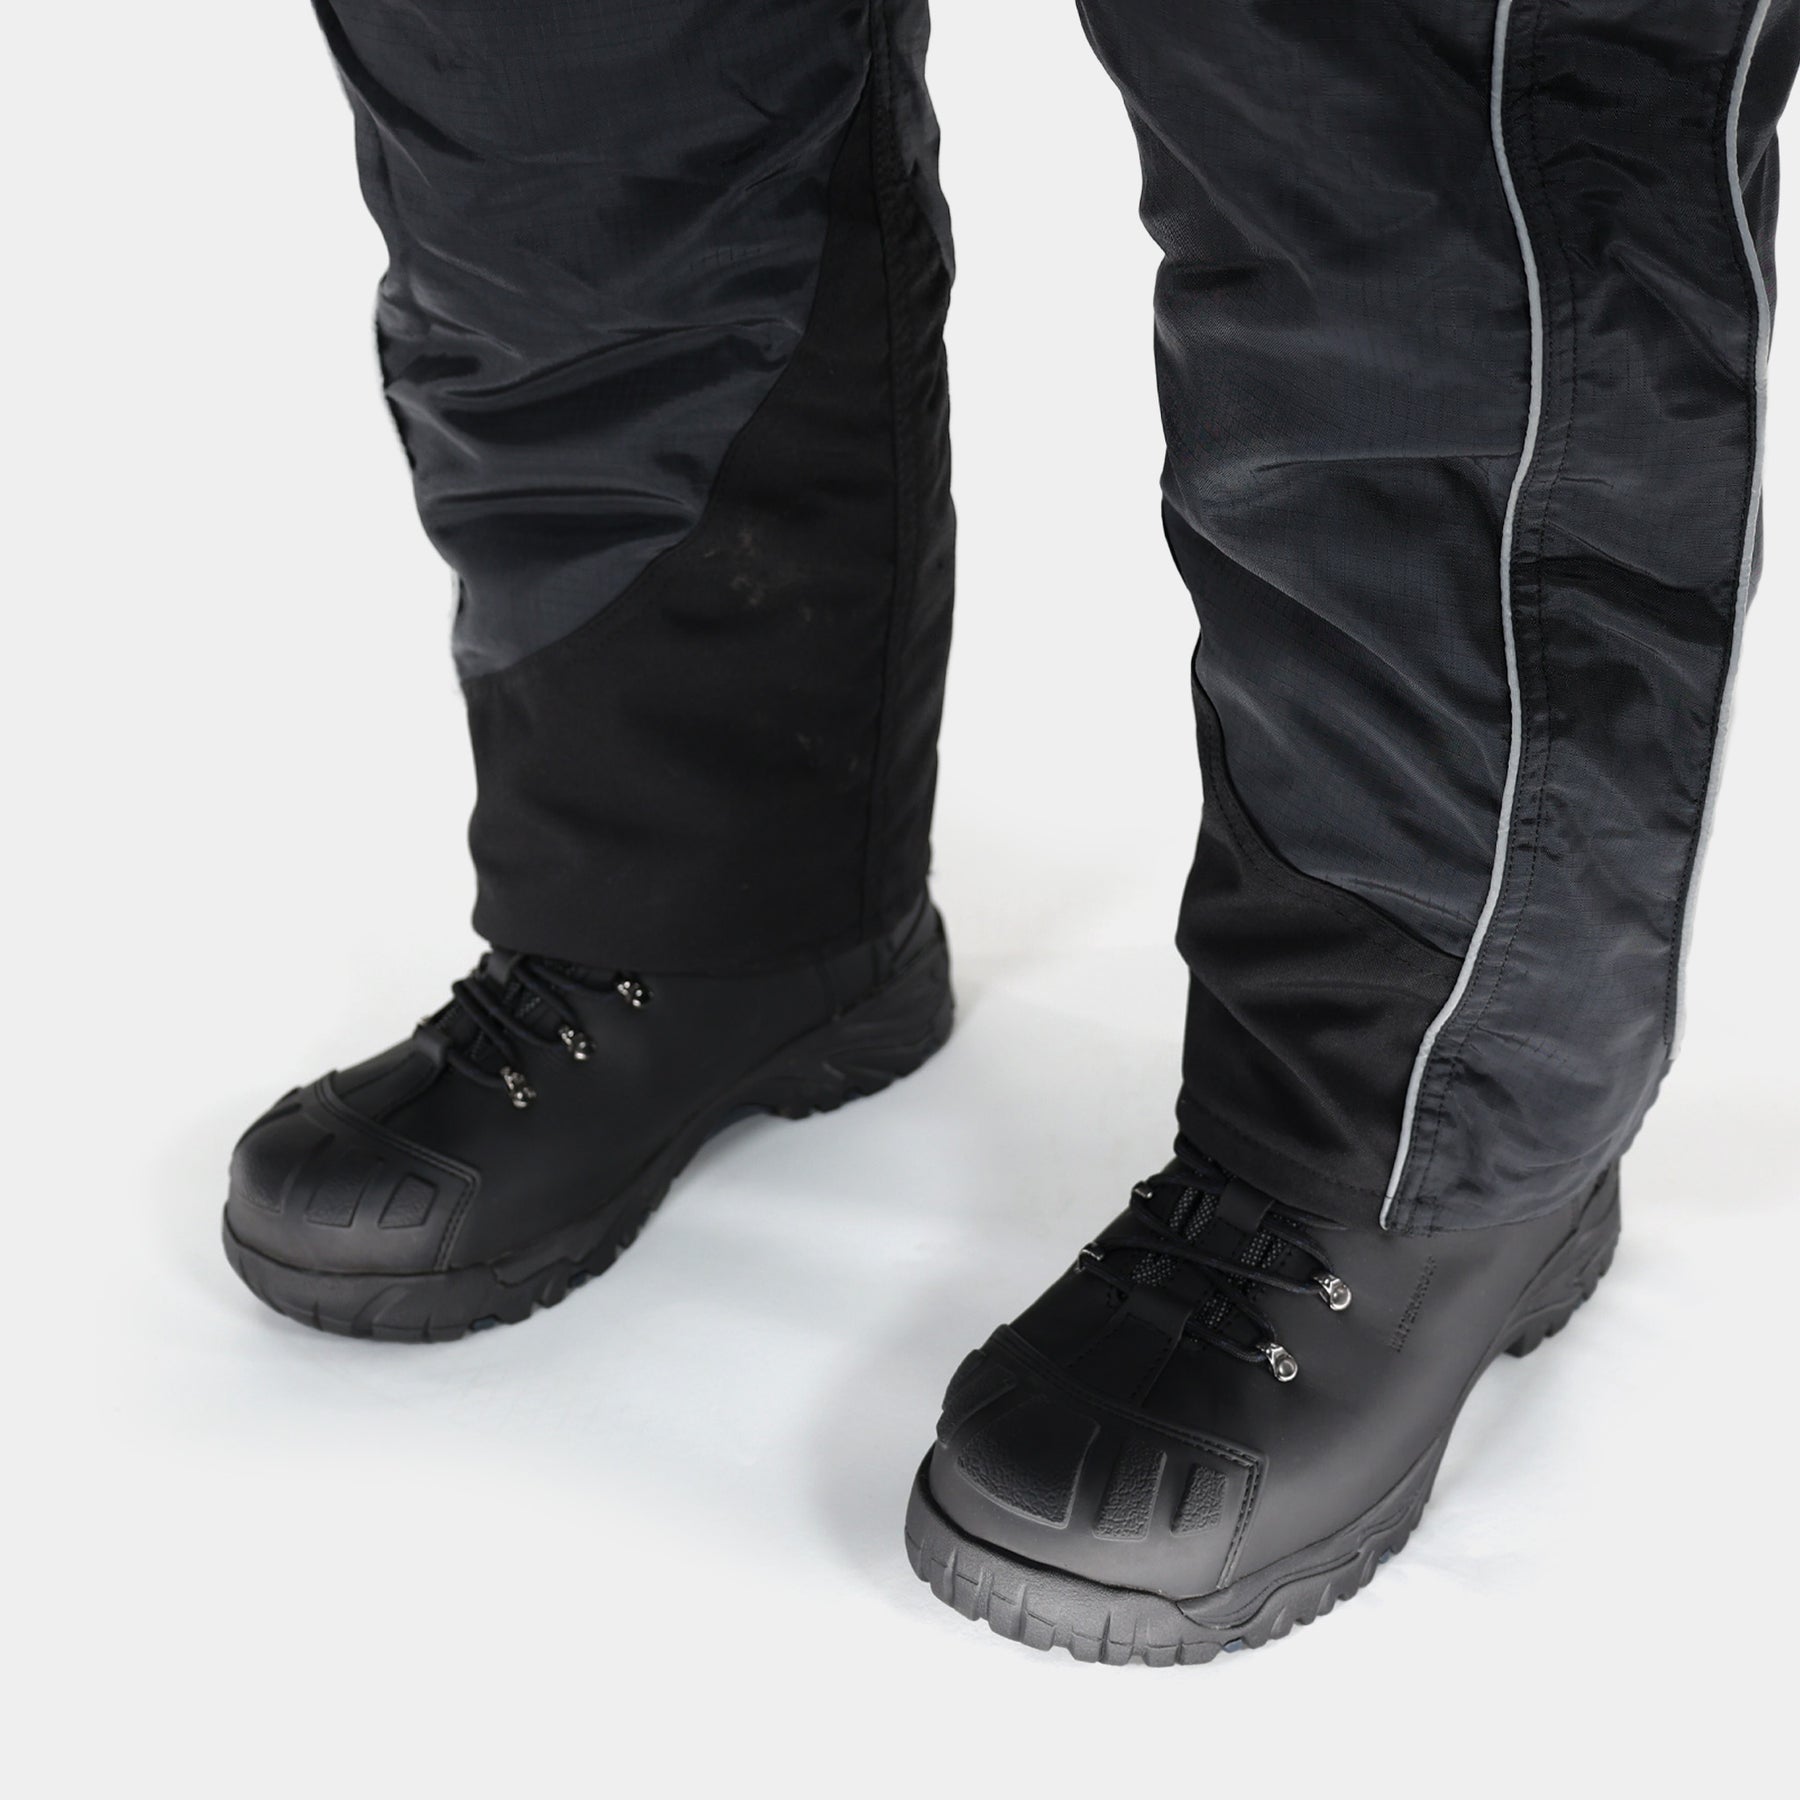 Reflex Bib Overalls - Black Insulated Workwear for Cold/Sub-Zero SM